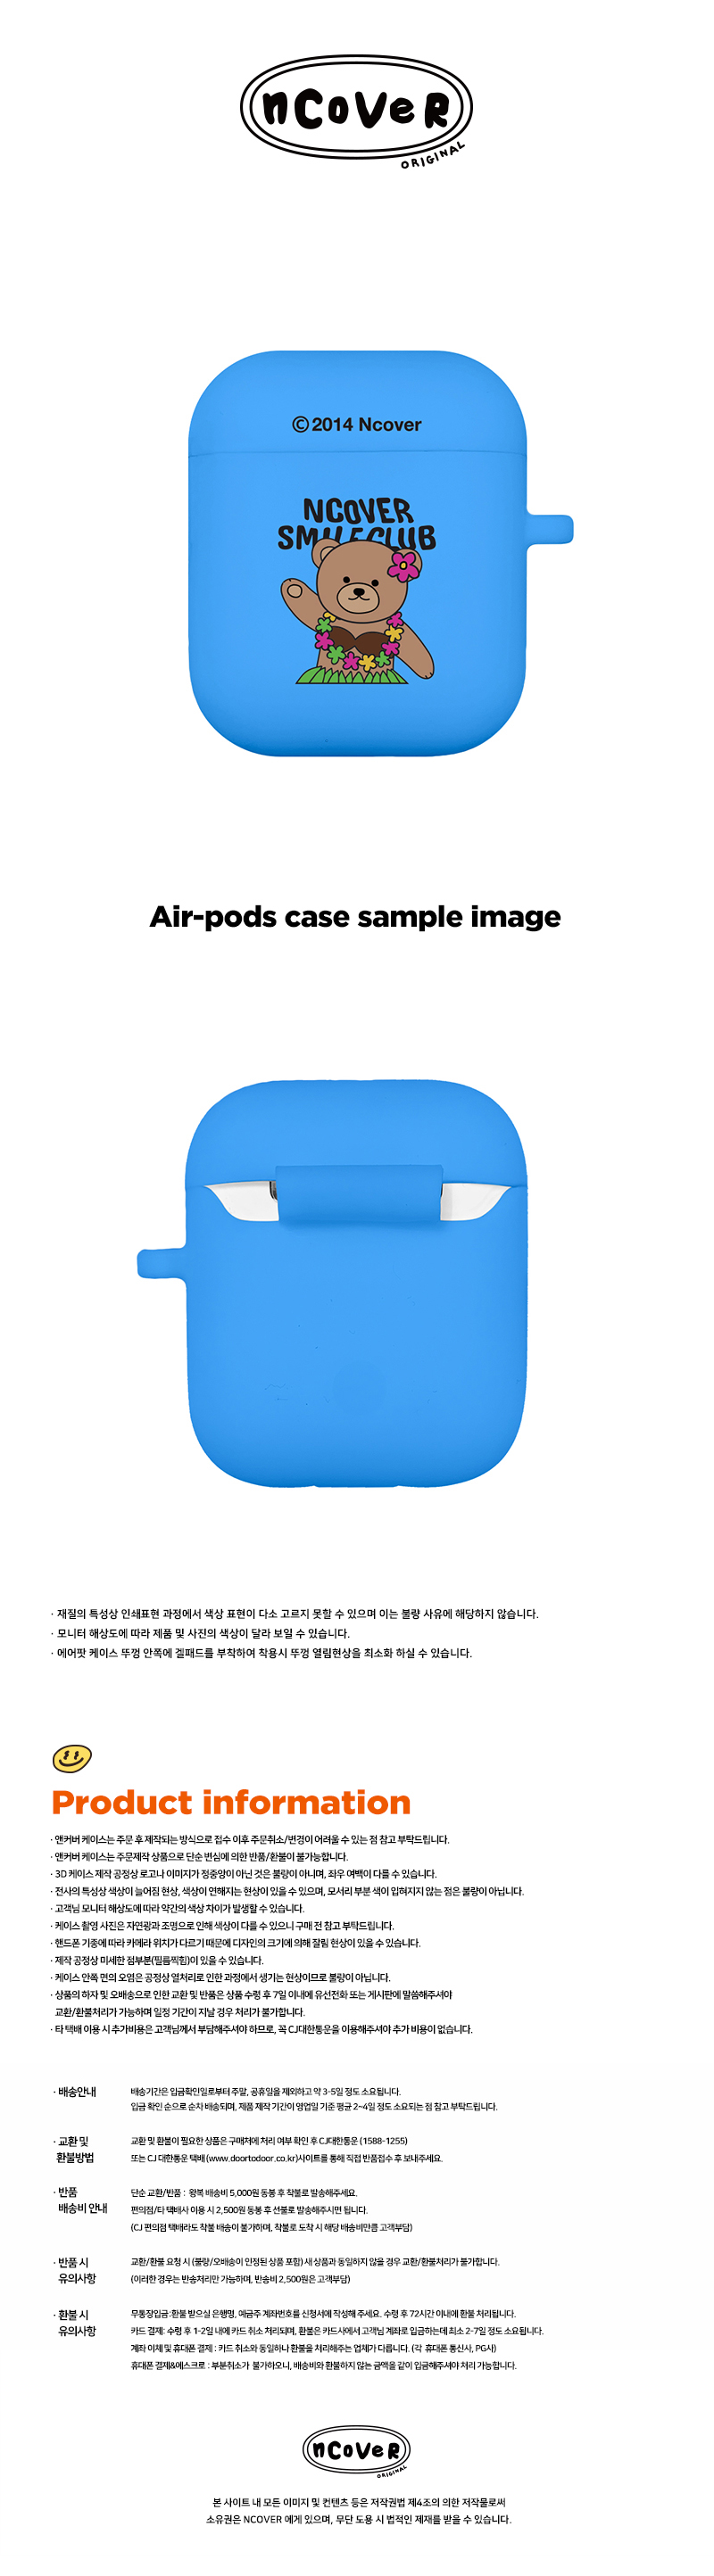 [호환용] Aloha bruin-blue(airpods jelly)  15,000원 - 바이인터내셔널주식회사 디지털, 이어폰/헤드폰, 이어폰/헤드폰 액세서리, 에어팟/에어팟프로 케이스 바보사랑 [호환용] Aloha bruin-blue(airpods jelly)  15,000원 - 바이인터내셔널주식회사 디지털, 이어폰/헤드폰, 이어폰/헤드폰 액세서리, 에어팟/에어팟프로 케이스 바보사랑